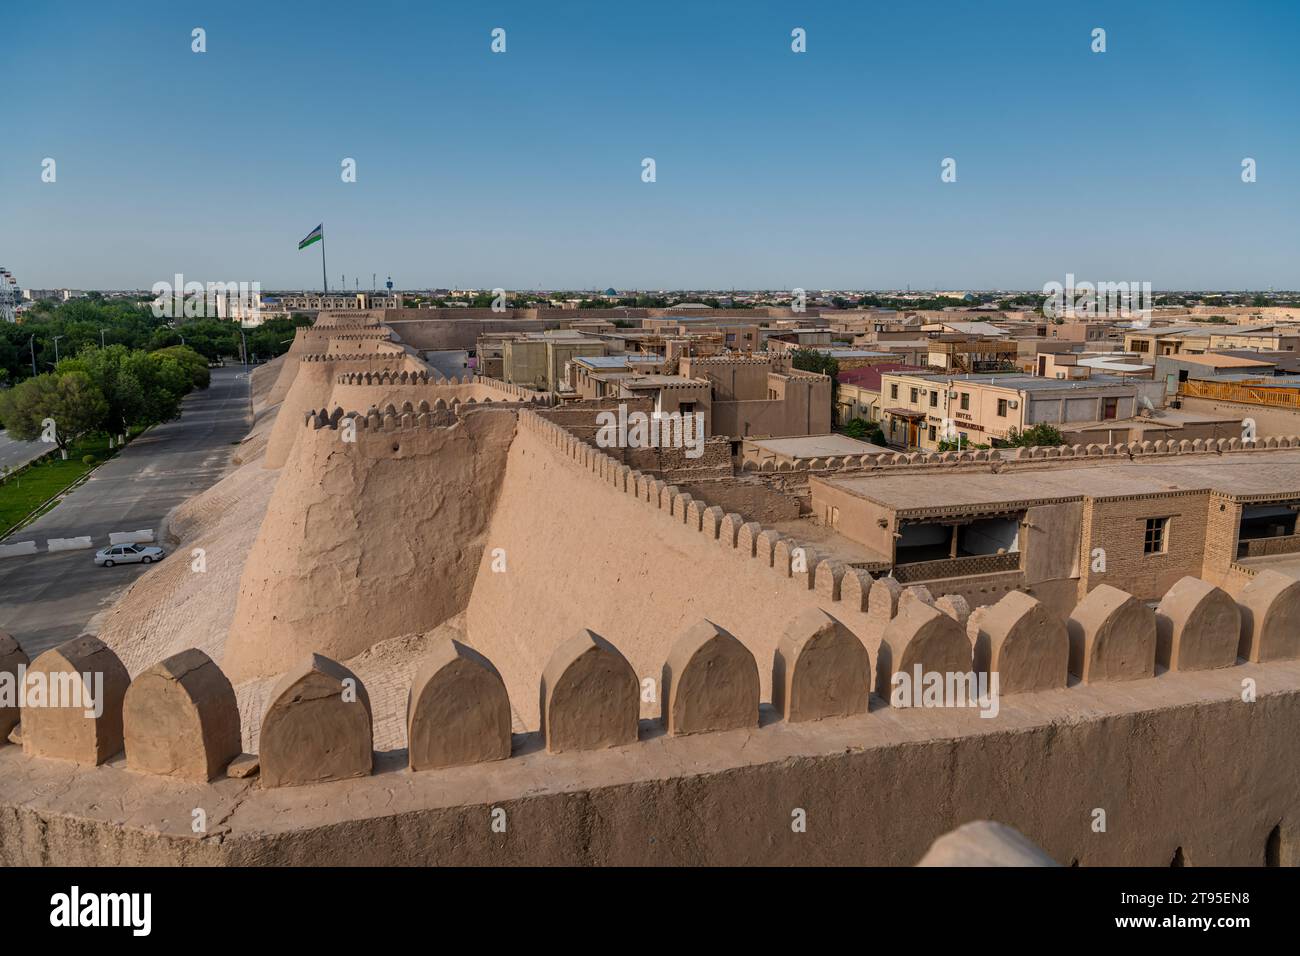 Les murs de la ville d'Itchan Kala. Itchan ou Ichan Kala est une ancienne ville fortifiée de la ville de Khiva en Ouzbékistan. Banque D'Images